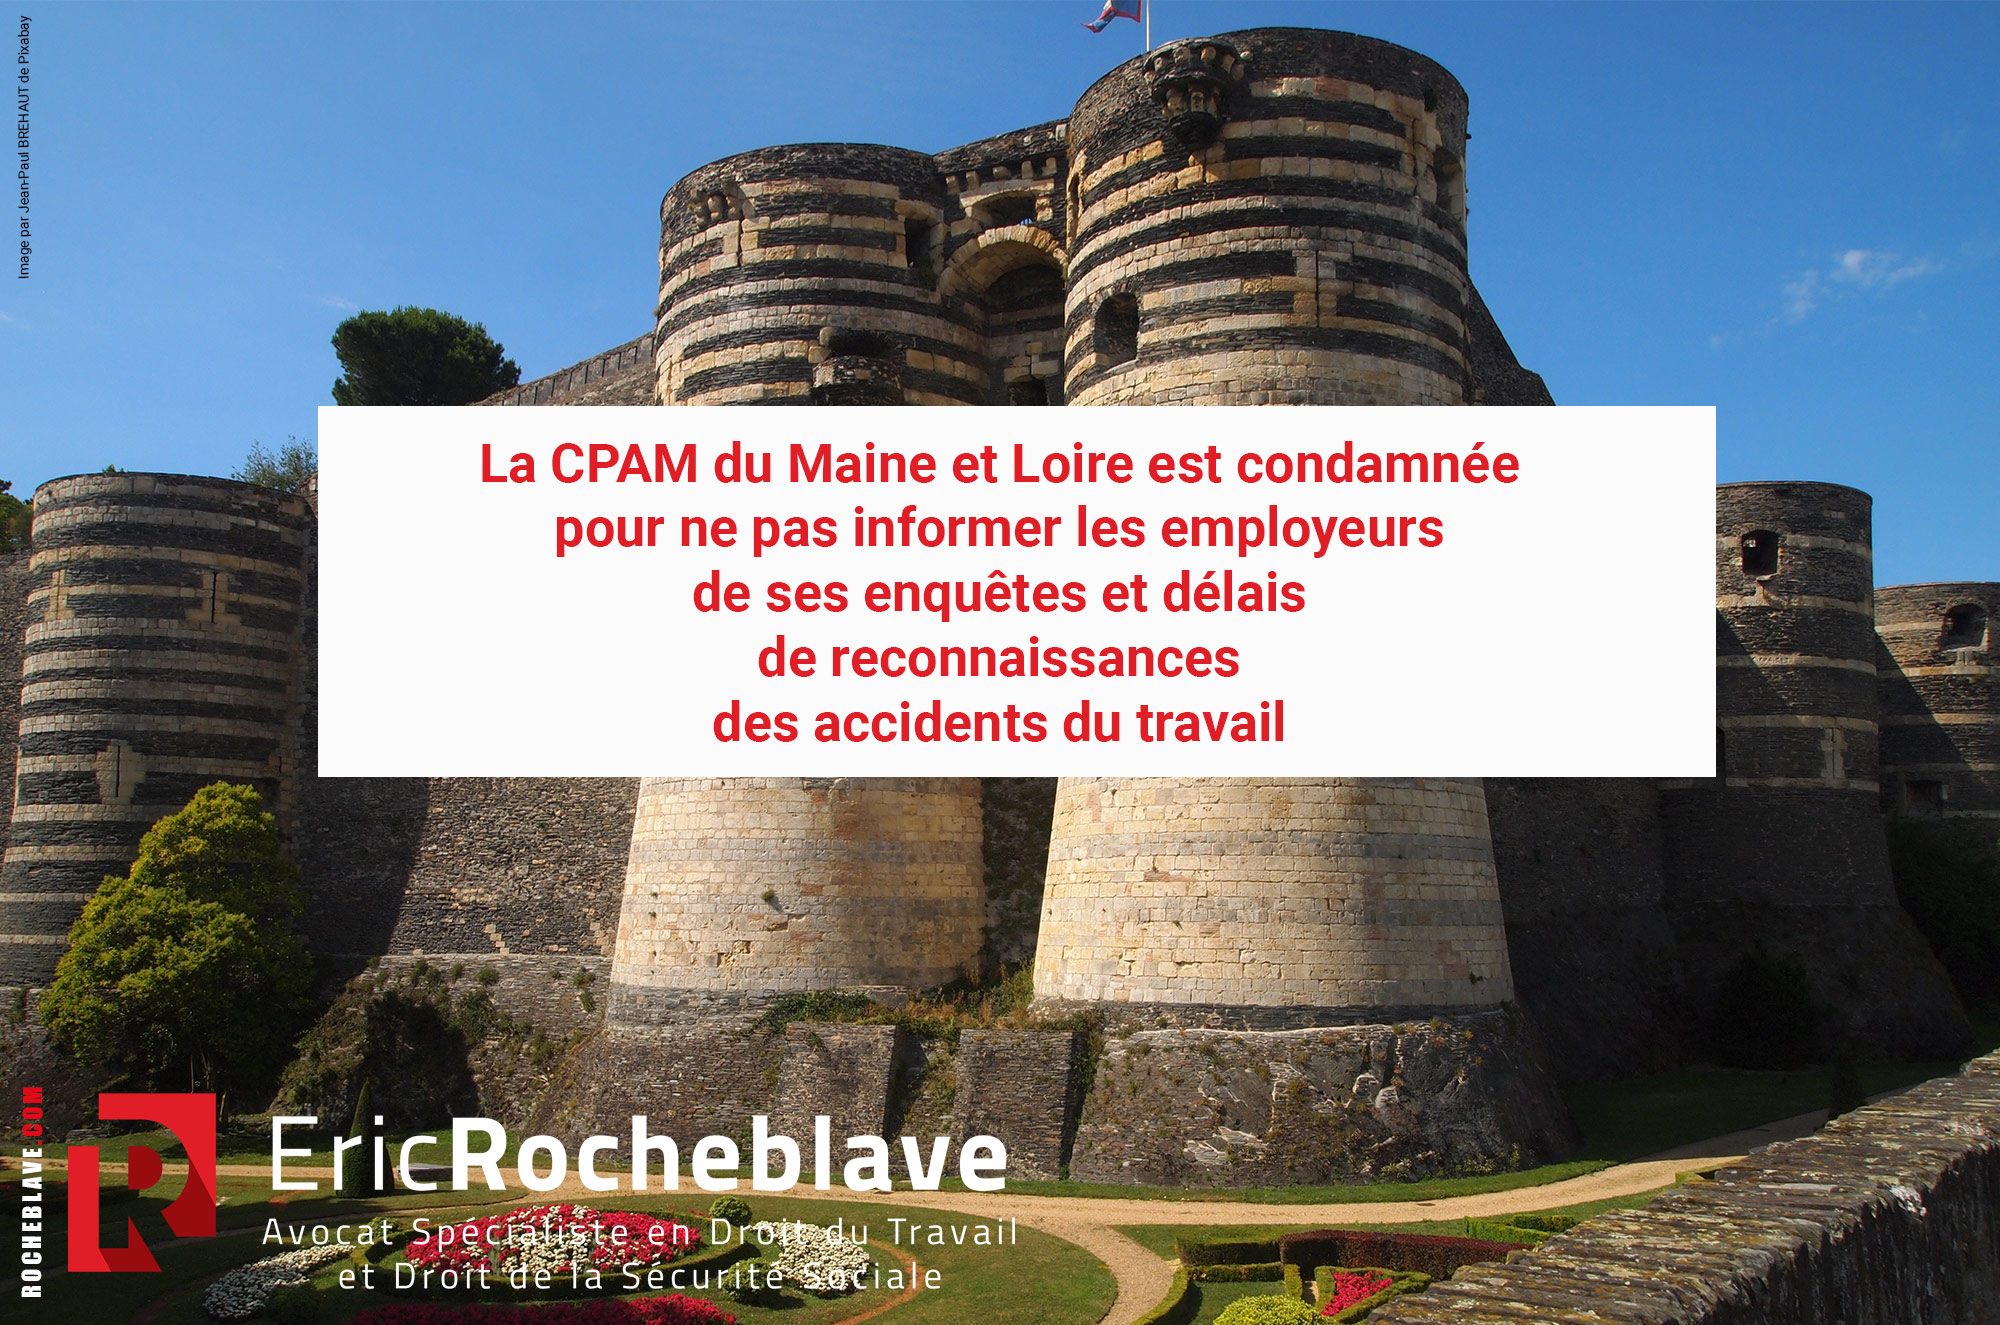 La CPAM du Maine et Loire est condamnée pour ne pas informer les employeurs de ses enquêtes et délais de reconnaissances des accidents du travail